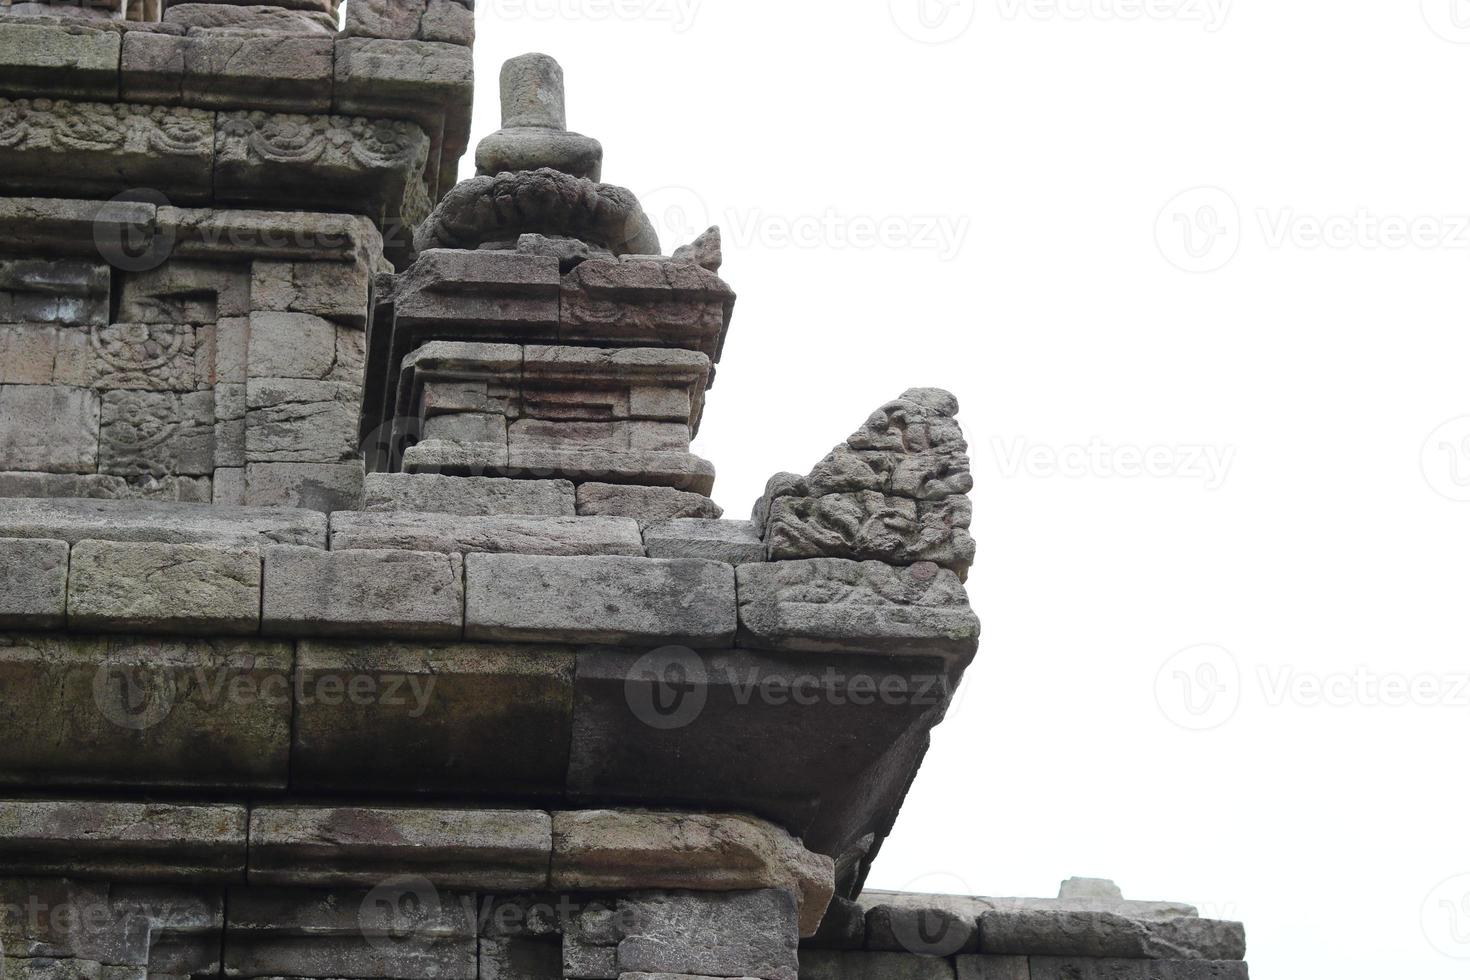 Fotos des Gedong-Songo-Tempels aus verschiedenen Blickwinkeln. alte und Vintage-Gebäudefotos.